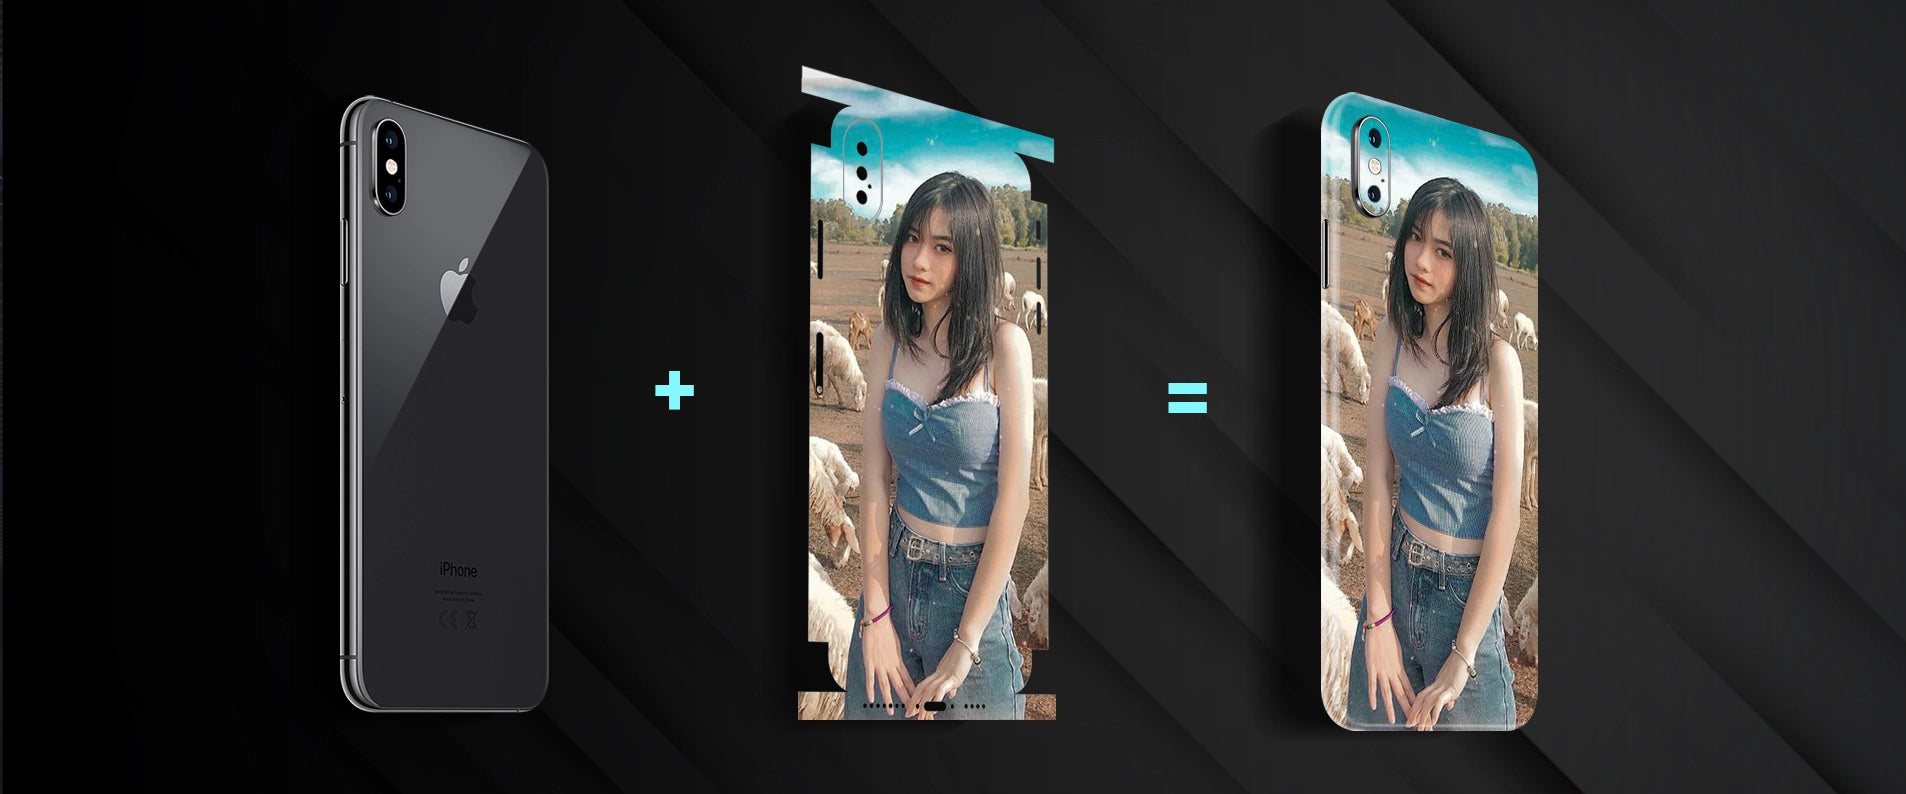 Skin in hình thiết kế cho iphone x/xs/xs max